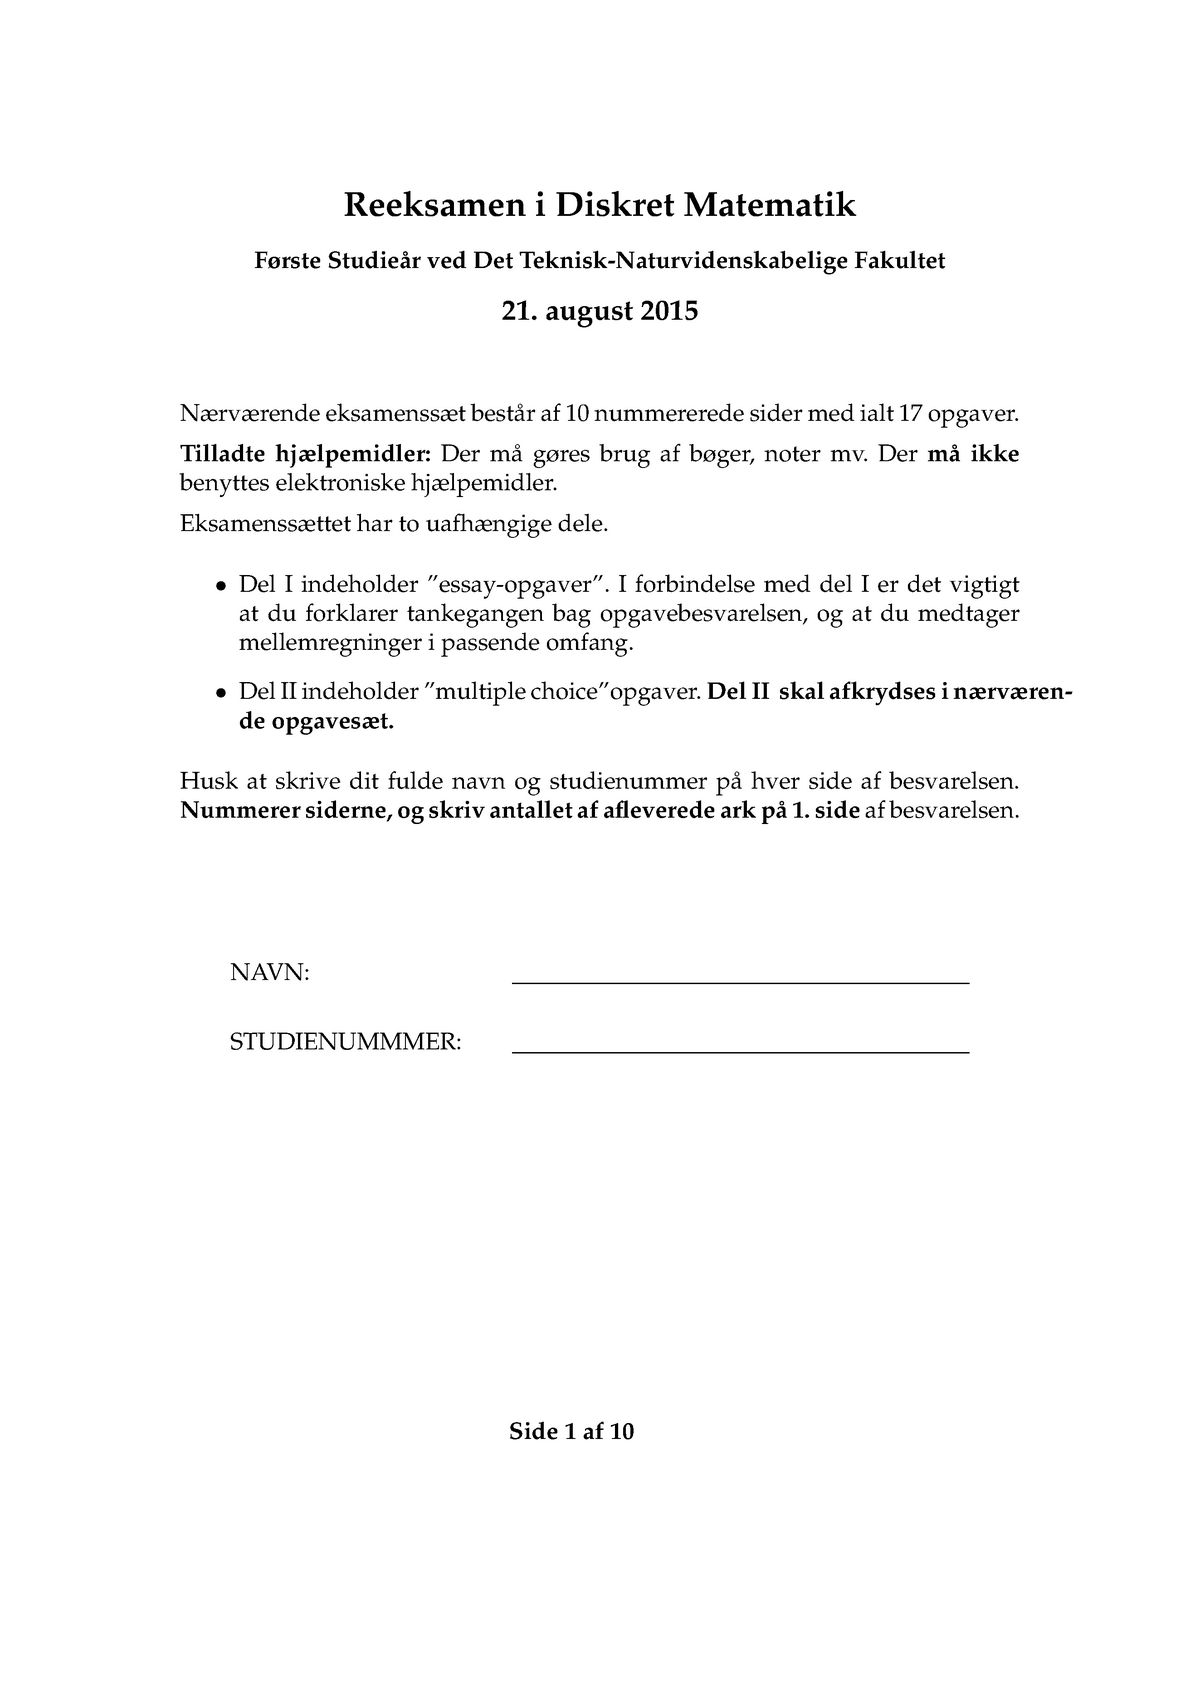 Past exam 21-08-2015, questions (Danish) Reeksamen i Diskret Matematik Første Studie ̊ar Det StuDocu